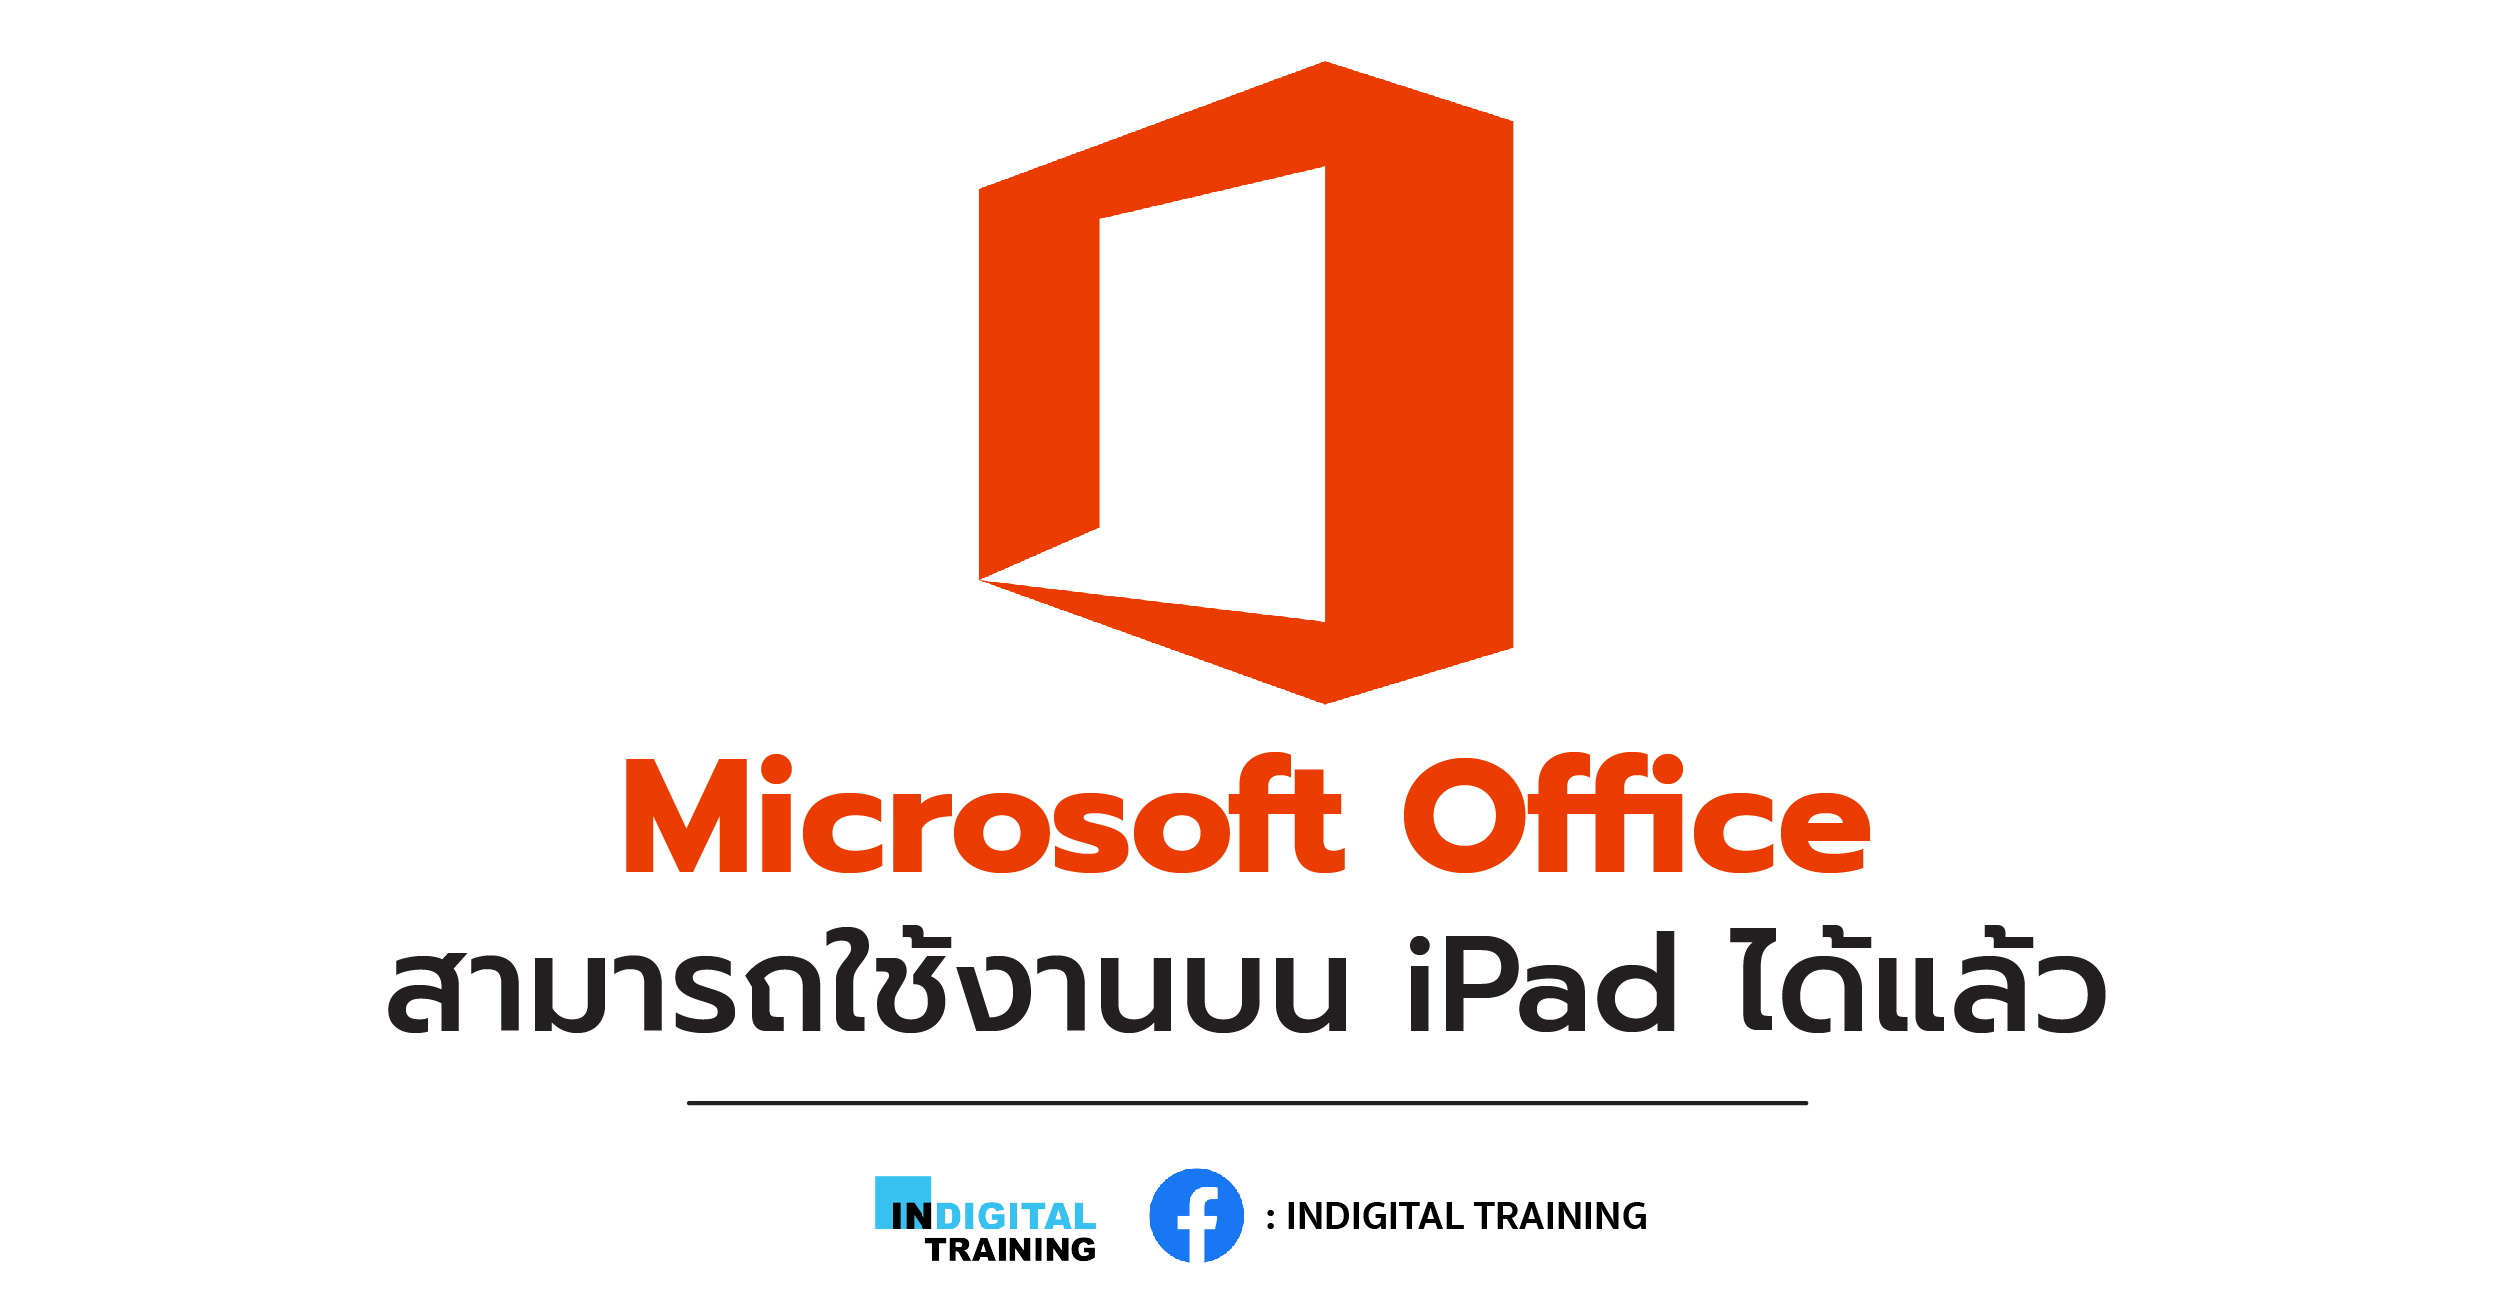 Microsoft Office สามารถใช้งานบน iPad ได้แล้ว